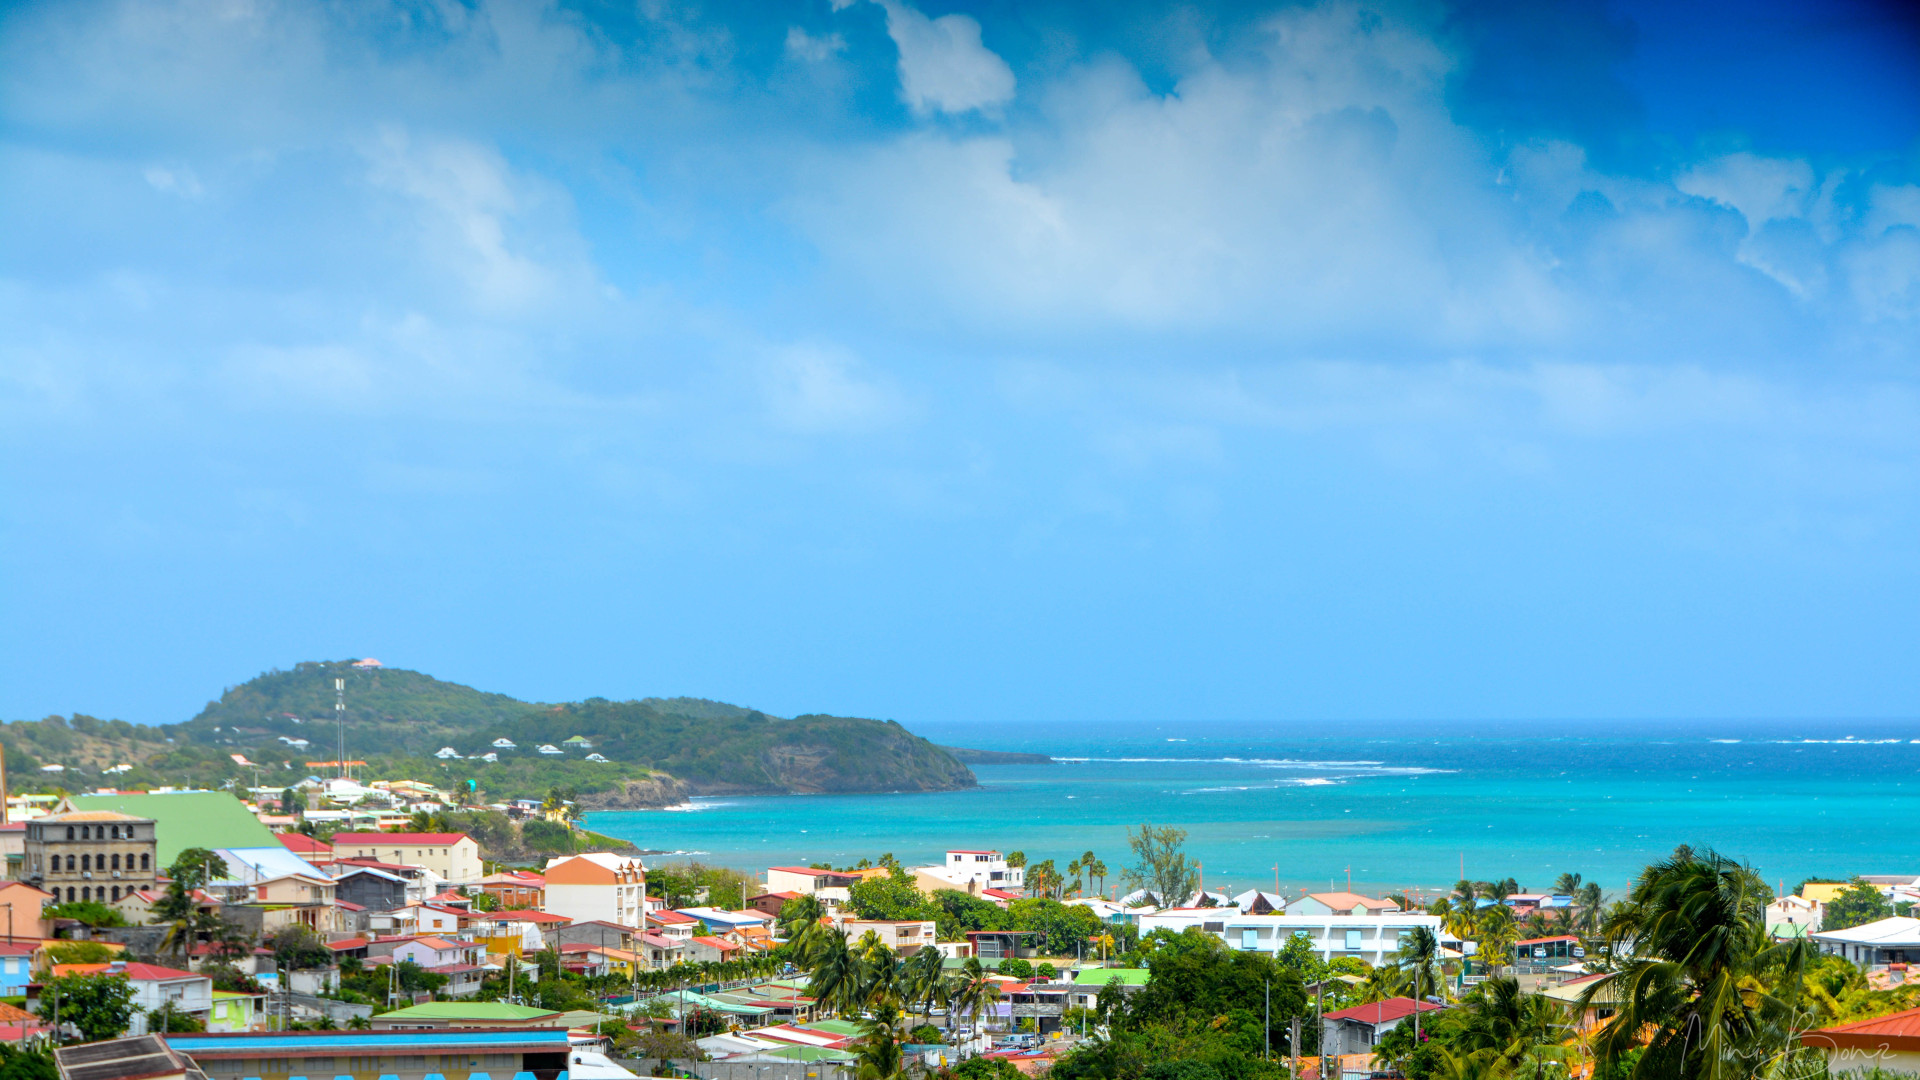 Location de voitures en Martinique : les bons plans pour économiser !